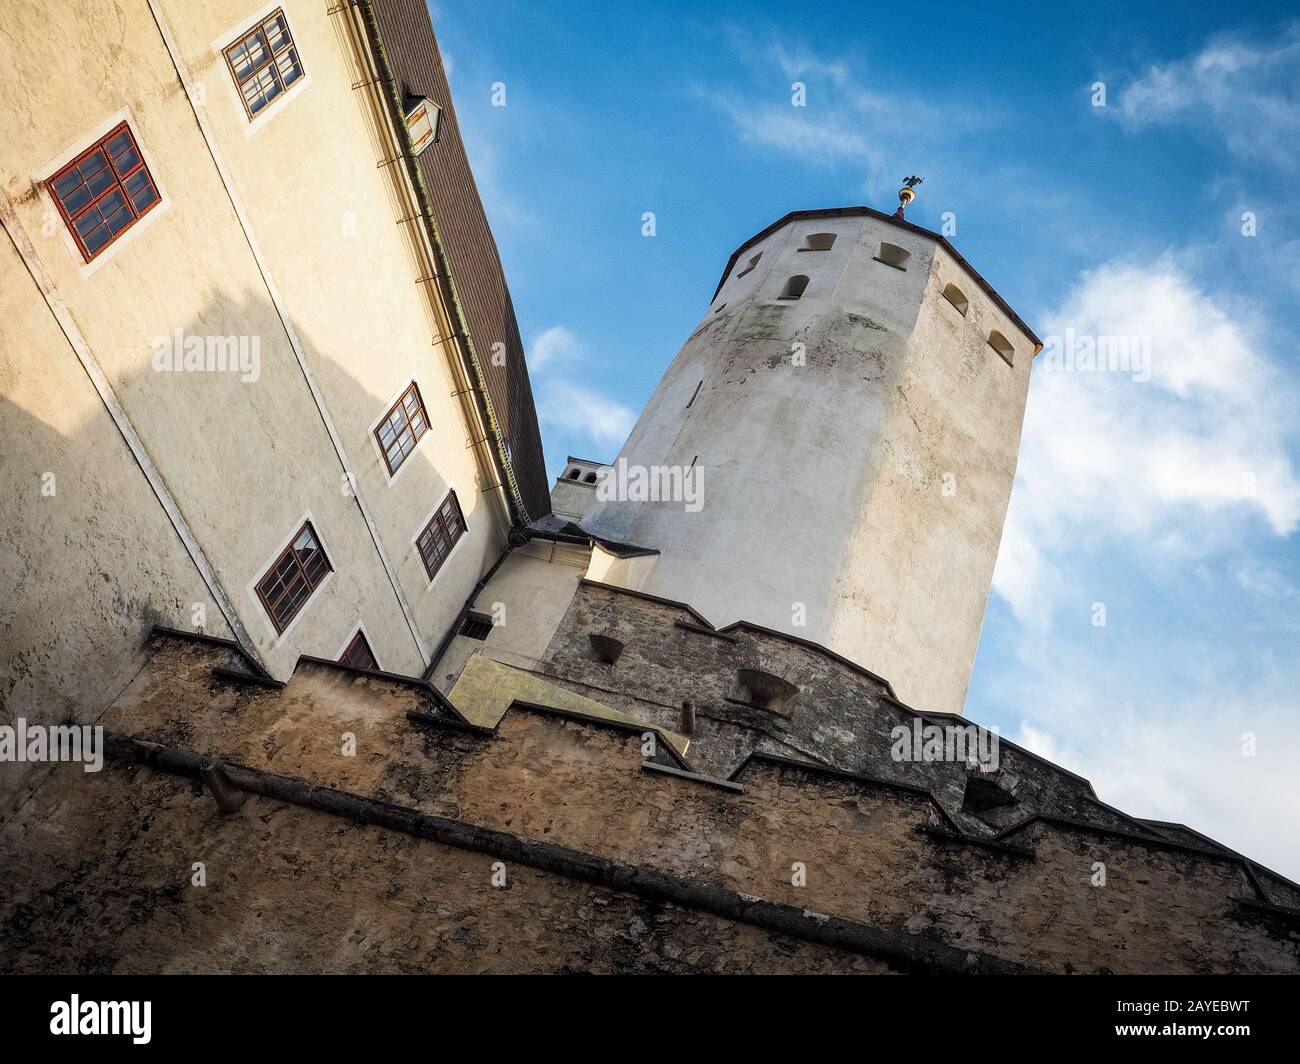 Castle of Forchtenstein in Burgenland Stock Photo